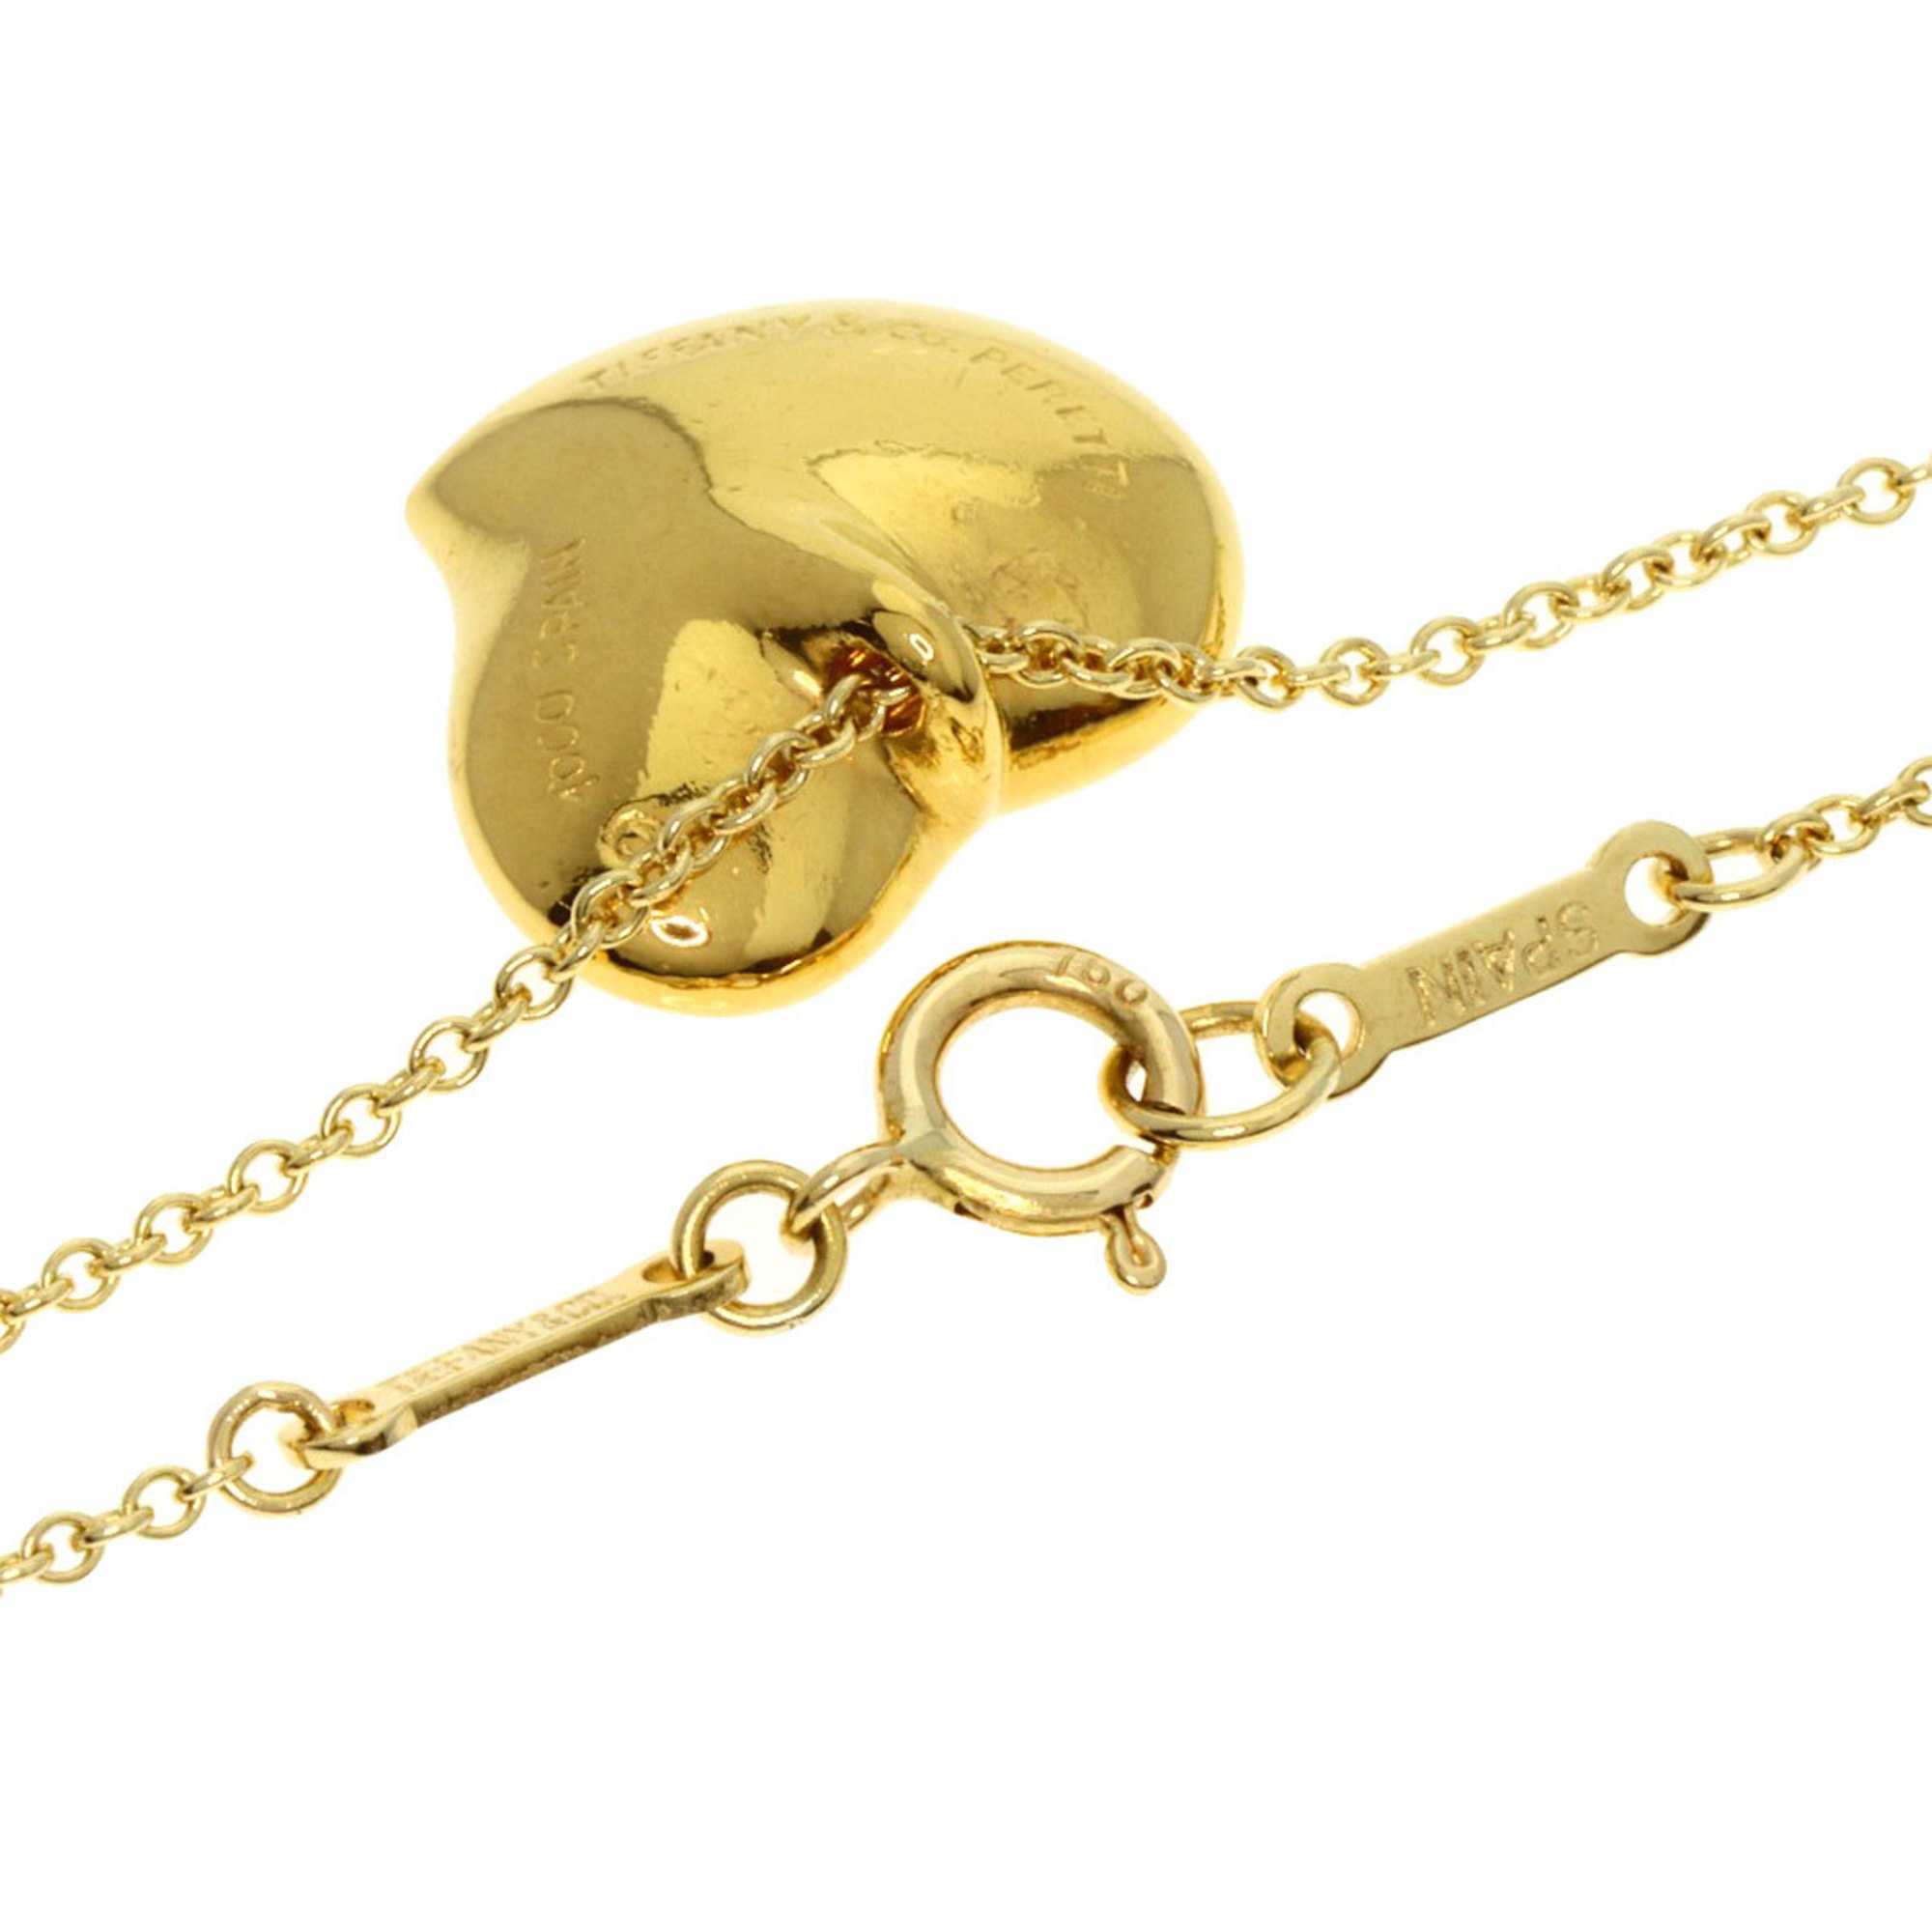 Tiffany Full Heart Necklace K18 Yellow Gold Women's TIFFANY&Co.